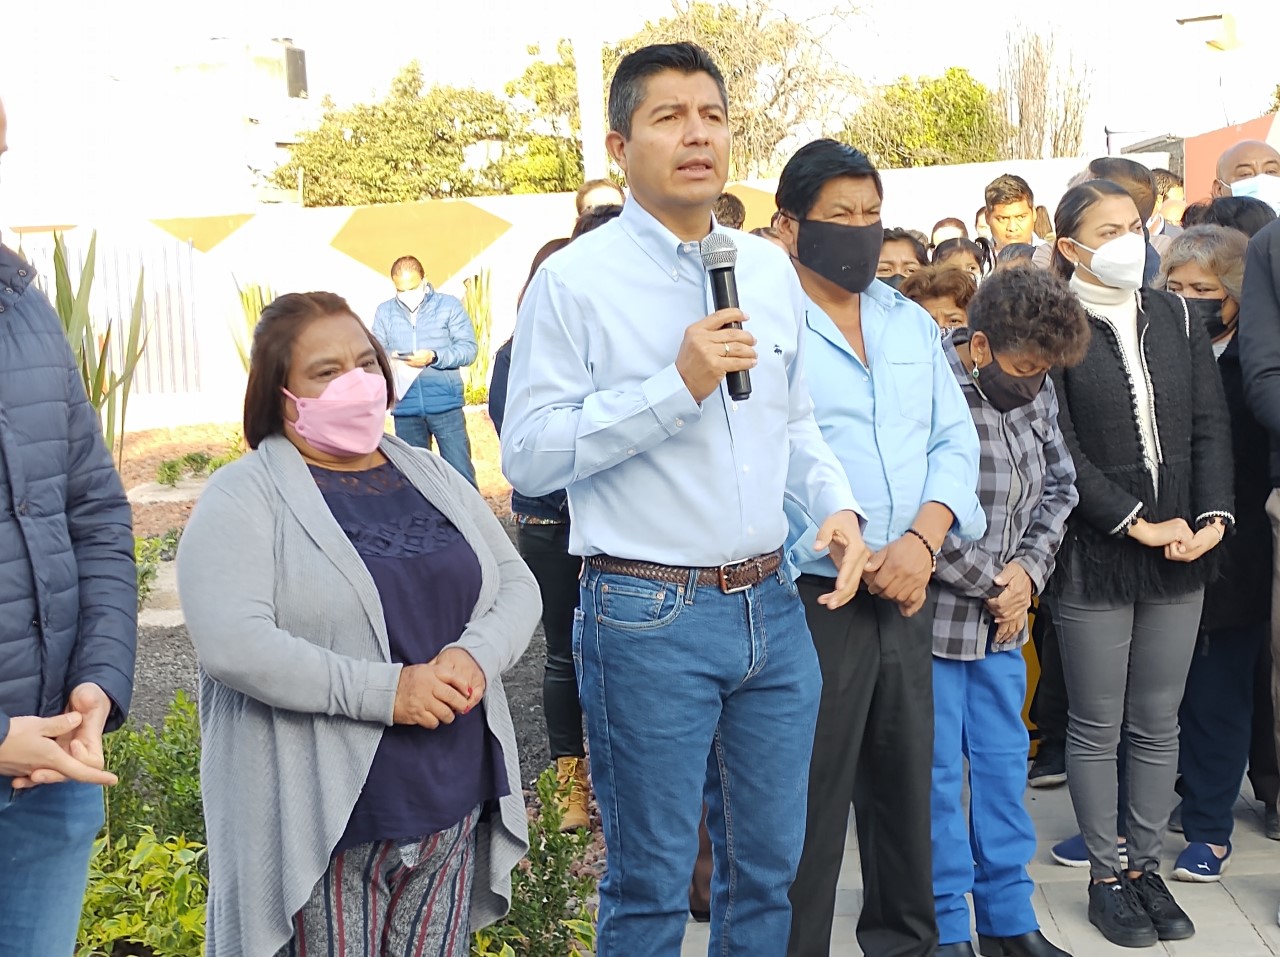 Video desde Puebla: Se evitará un “queretazo” con medidas de seguridad en los estadios, indicó Eduardo Rivera